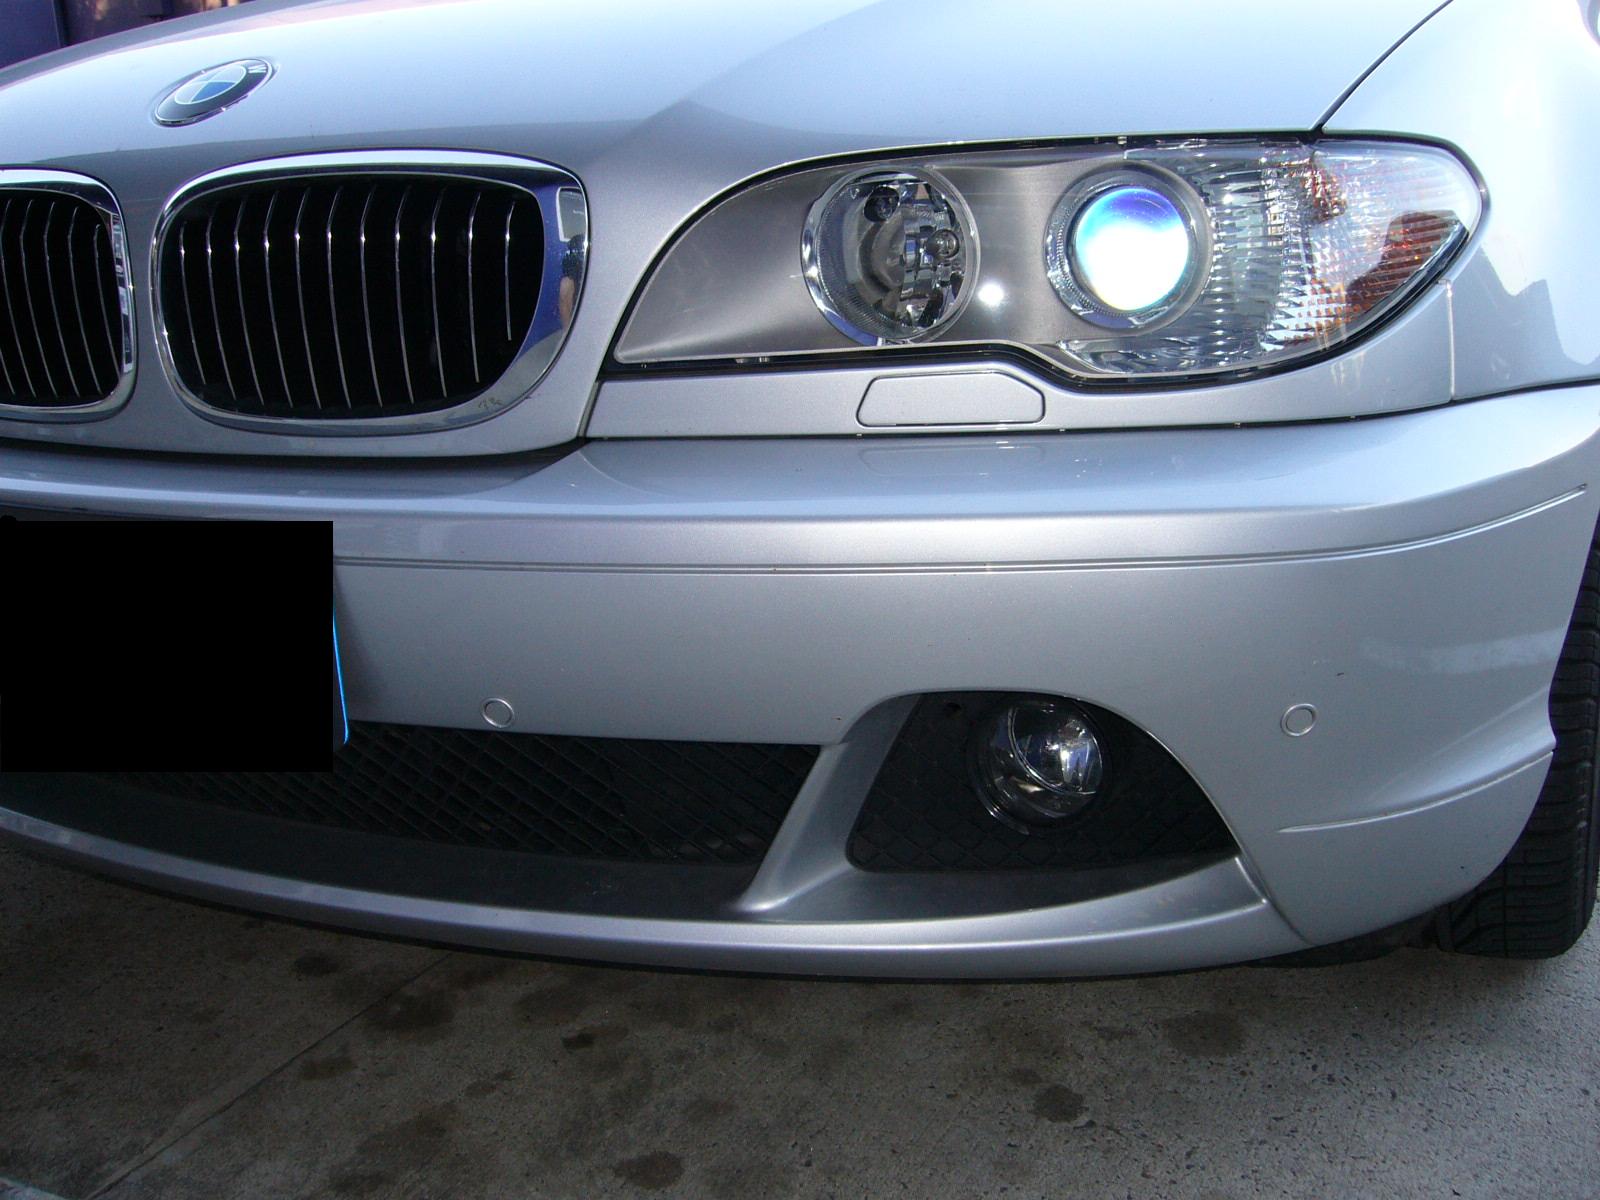 BMW 3 series front park sensors